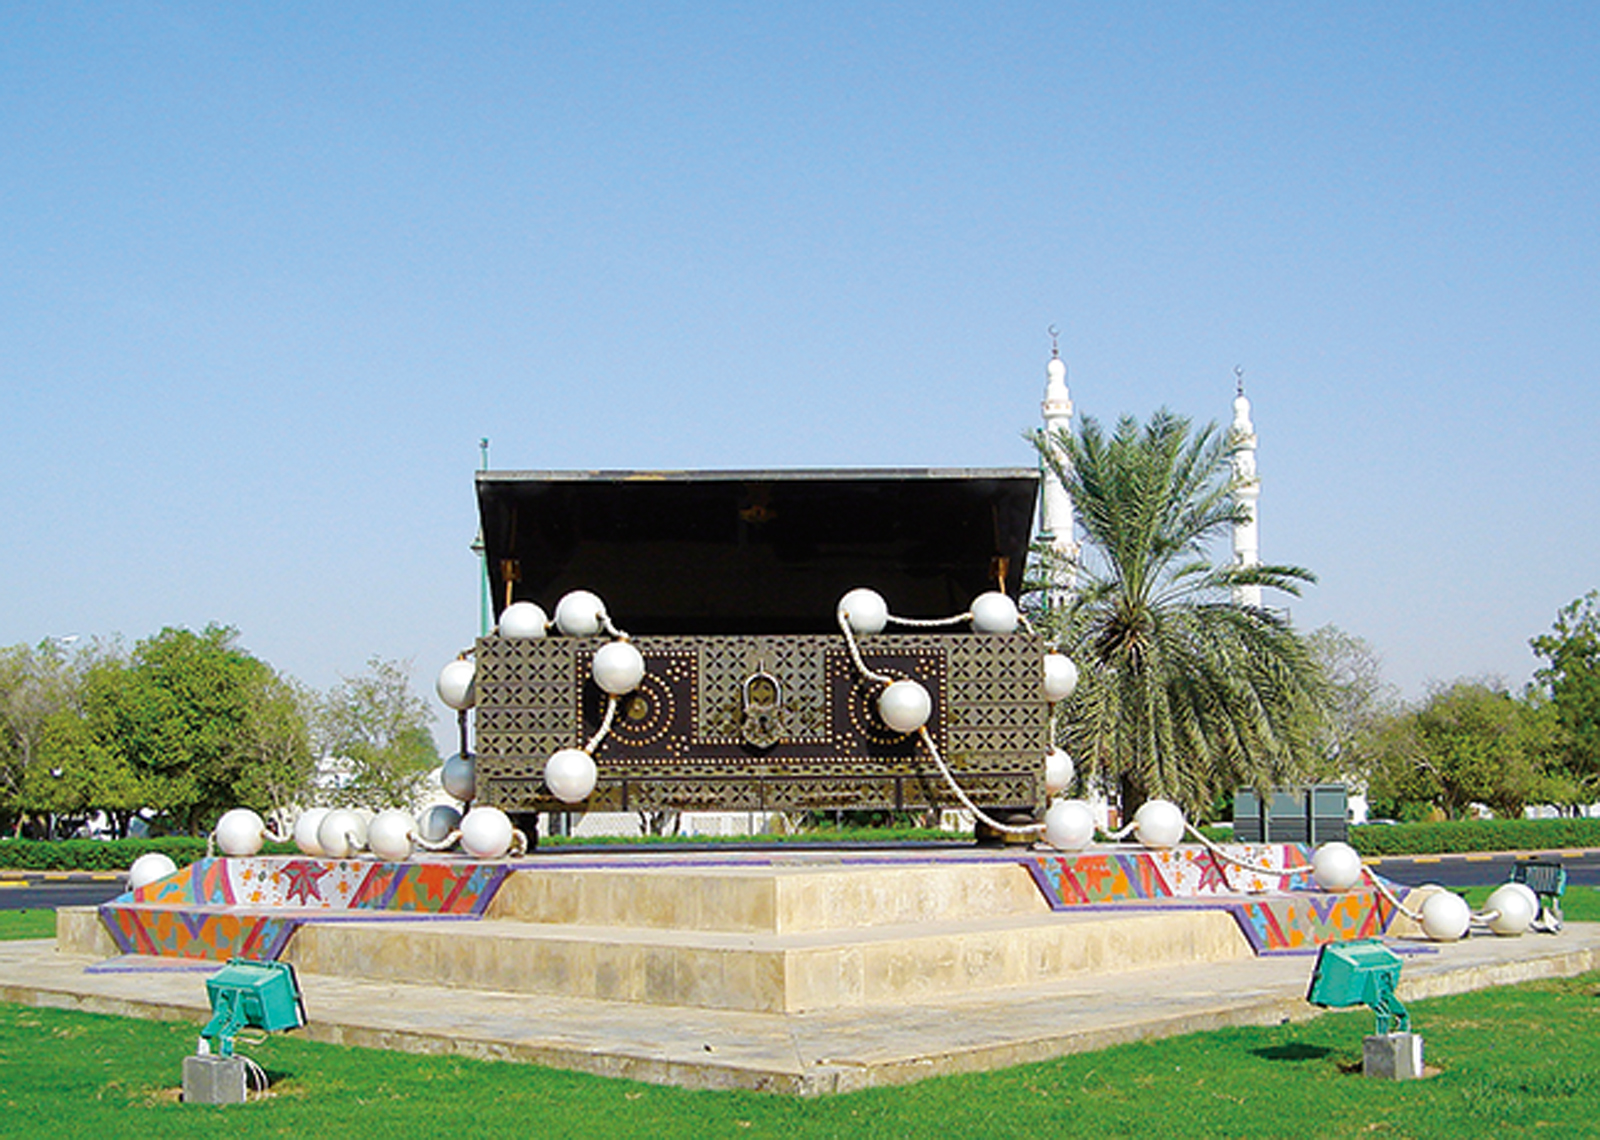 <p><em><em>La función cultural del baúl de ajuar se destaca en esta obra de arte pública de Al Ain, Emiratos Árabes Unidos, ubicada en una rotonda de tráfico.</em></em></p>